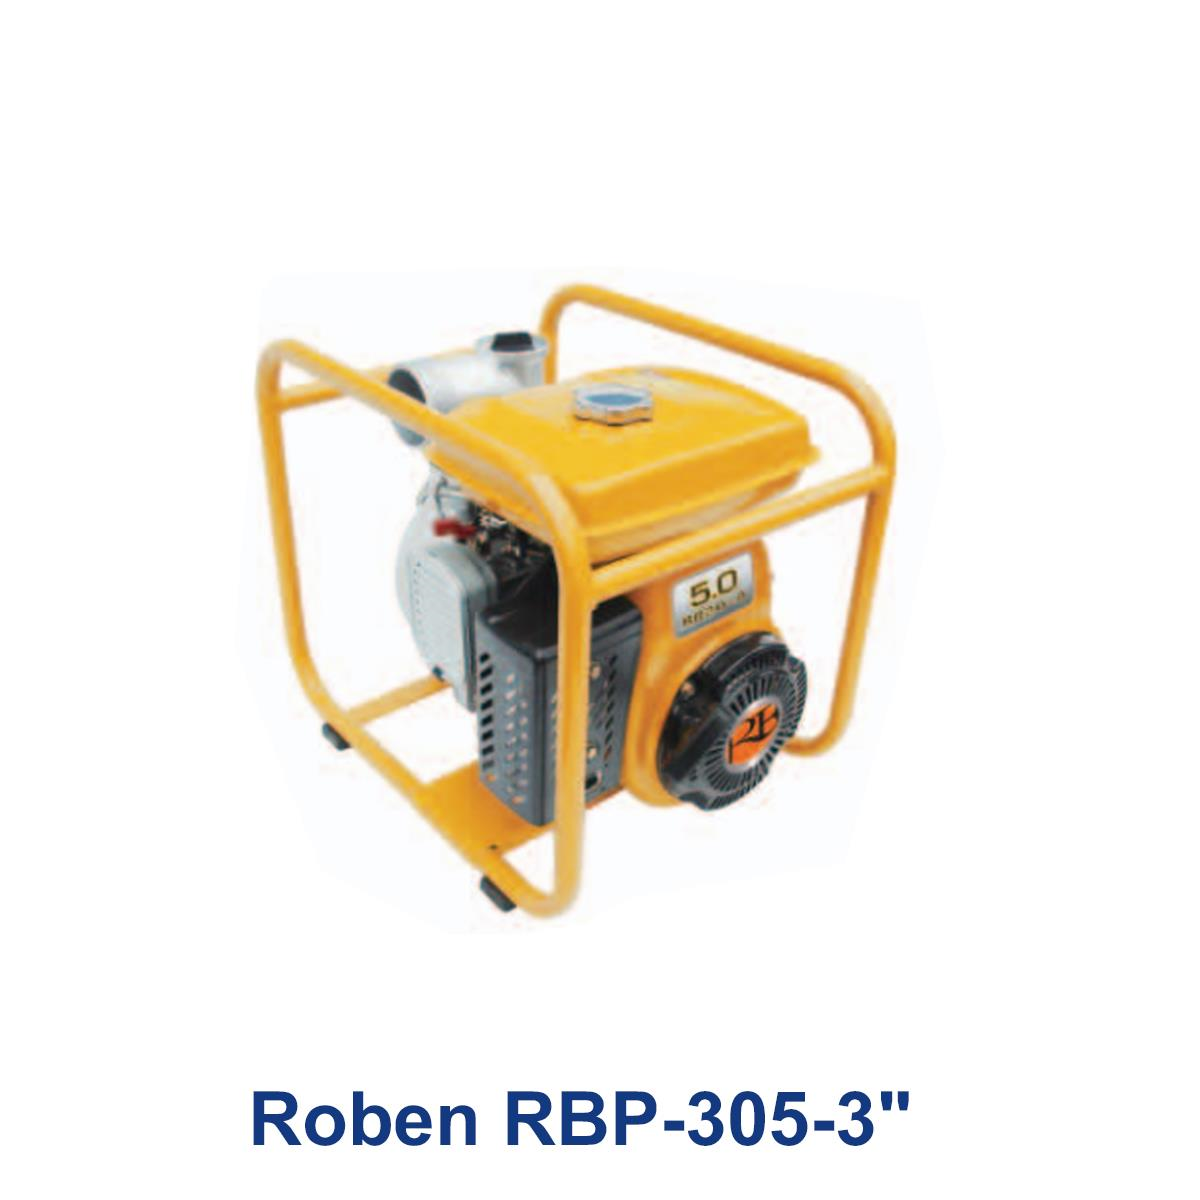 Roben-RBP-305-3